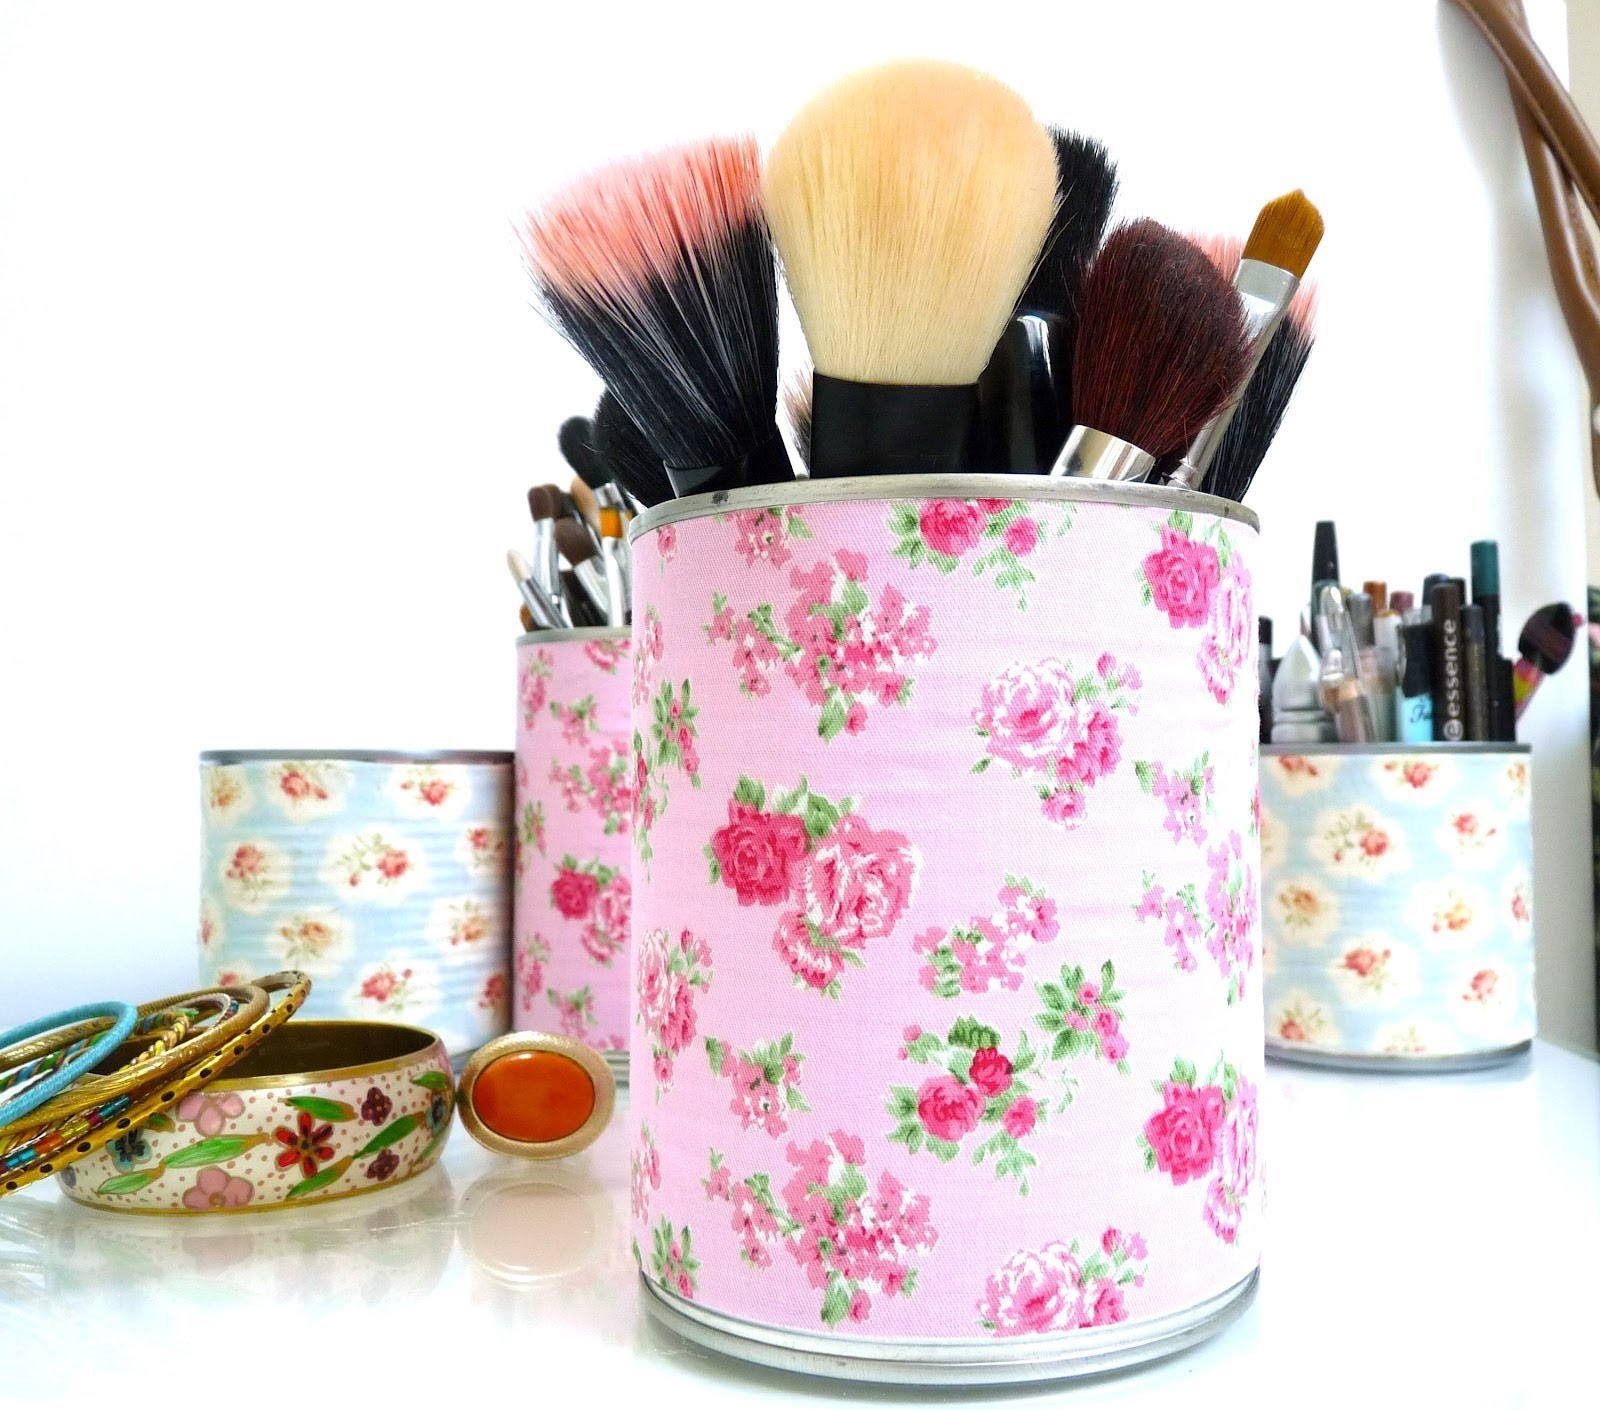 DIY : Recycler Vos Boîtes de Conserve - Rangement Make up - Make up storage